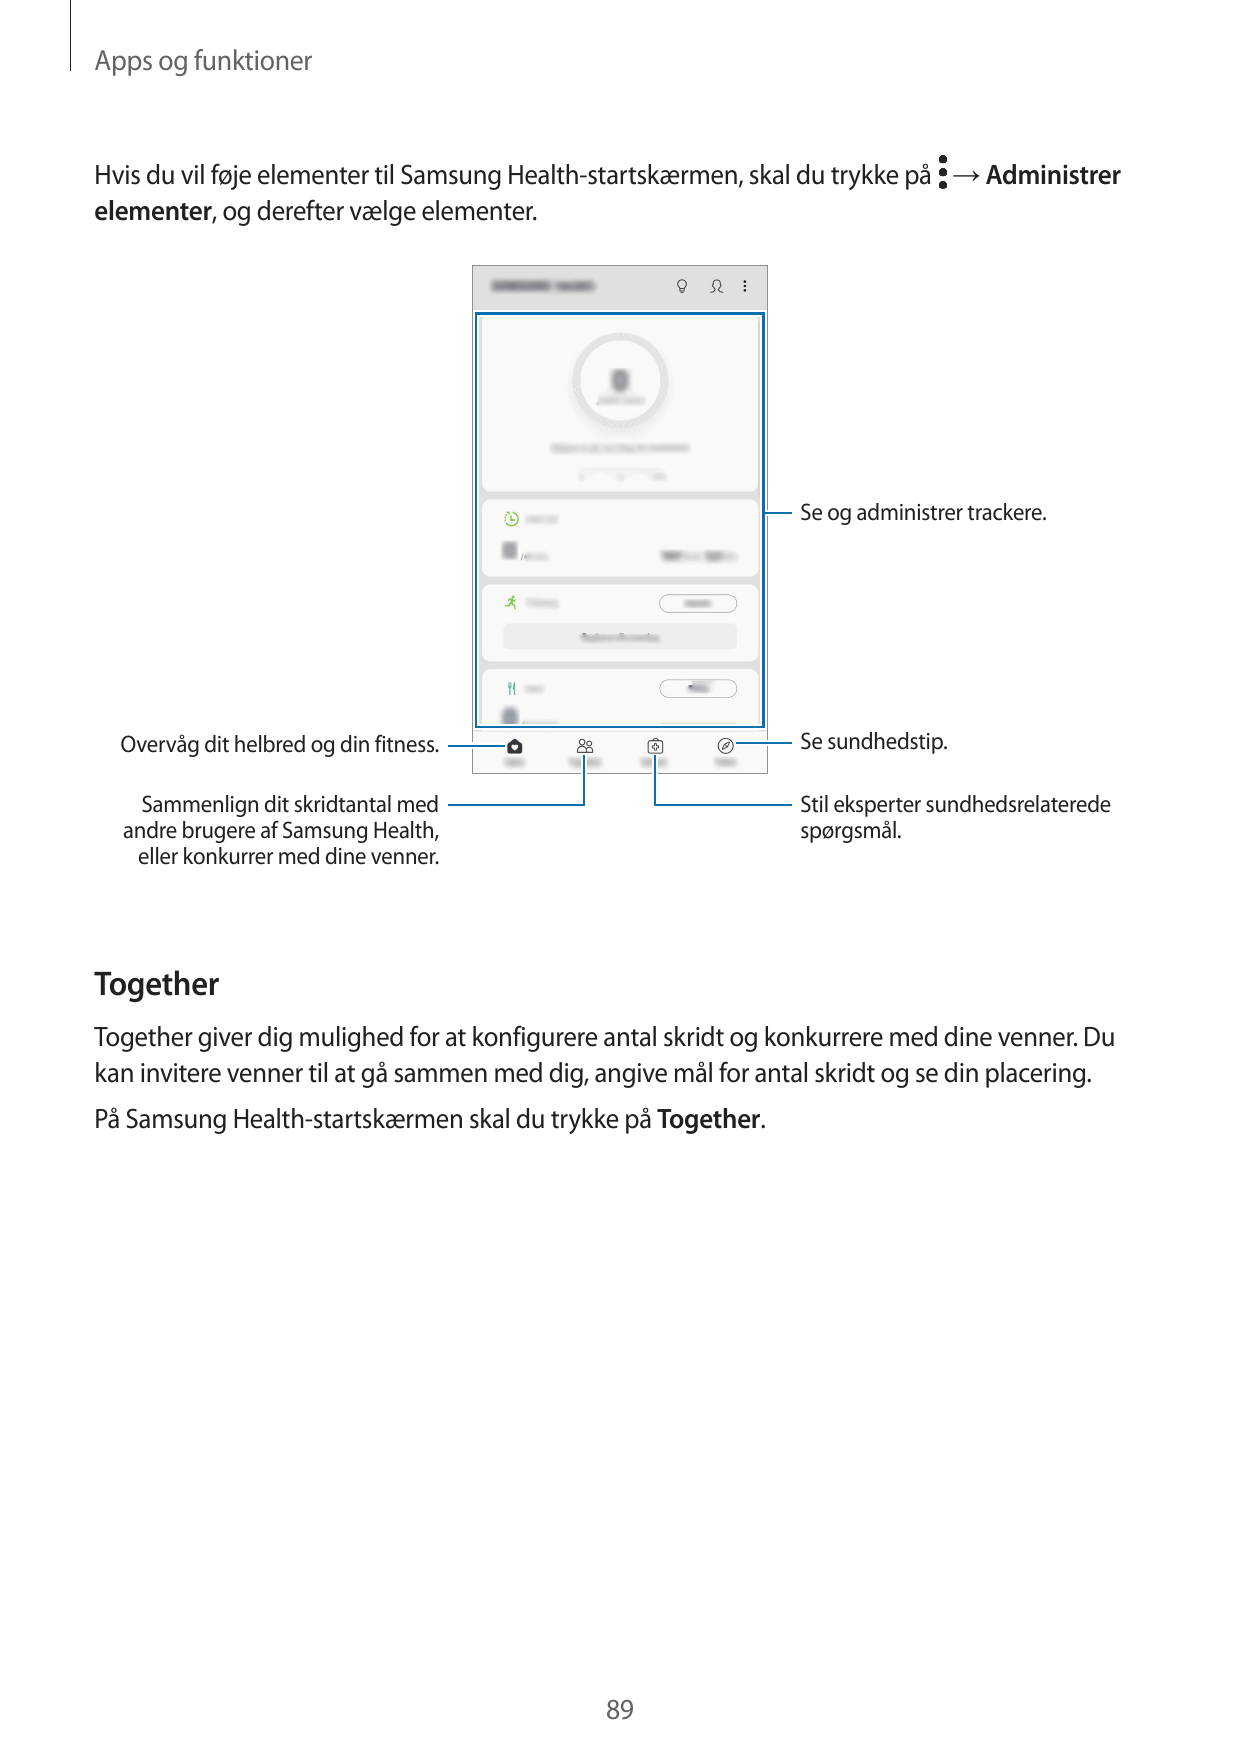 Apps og funktionerHvis du vil føje elementer til Samsung Health-startskærmen, skal du trykke på → Administrerelementer, og deref